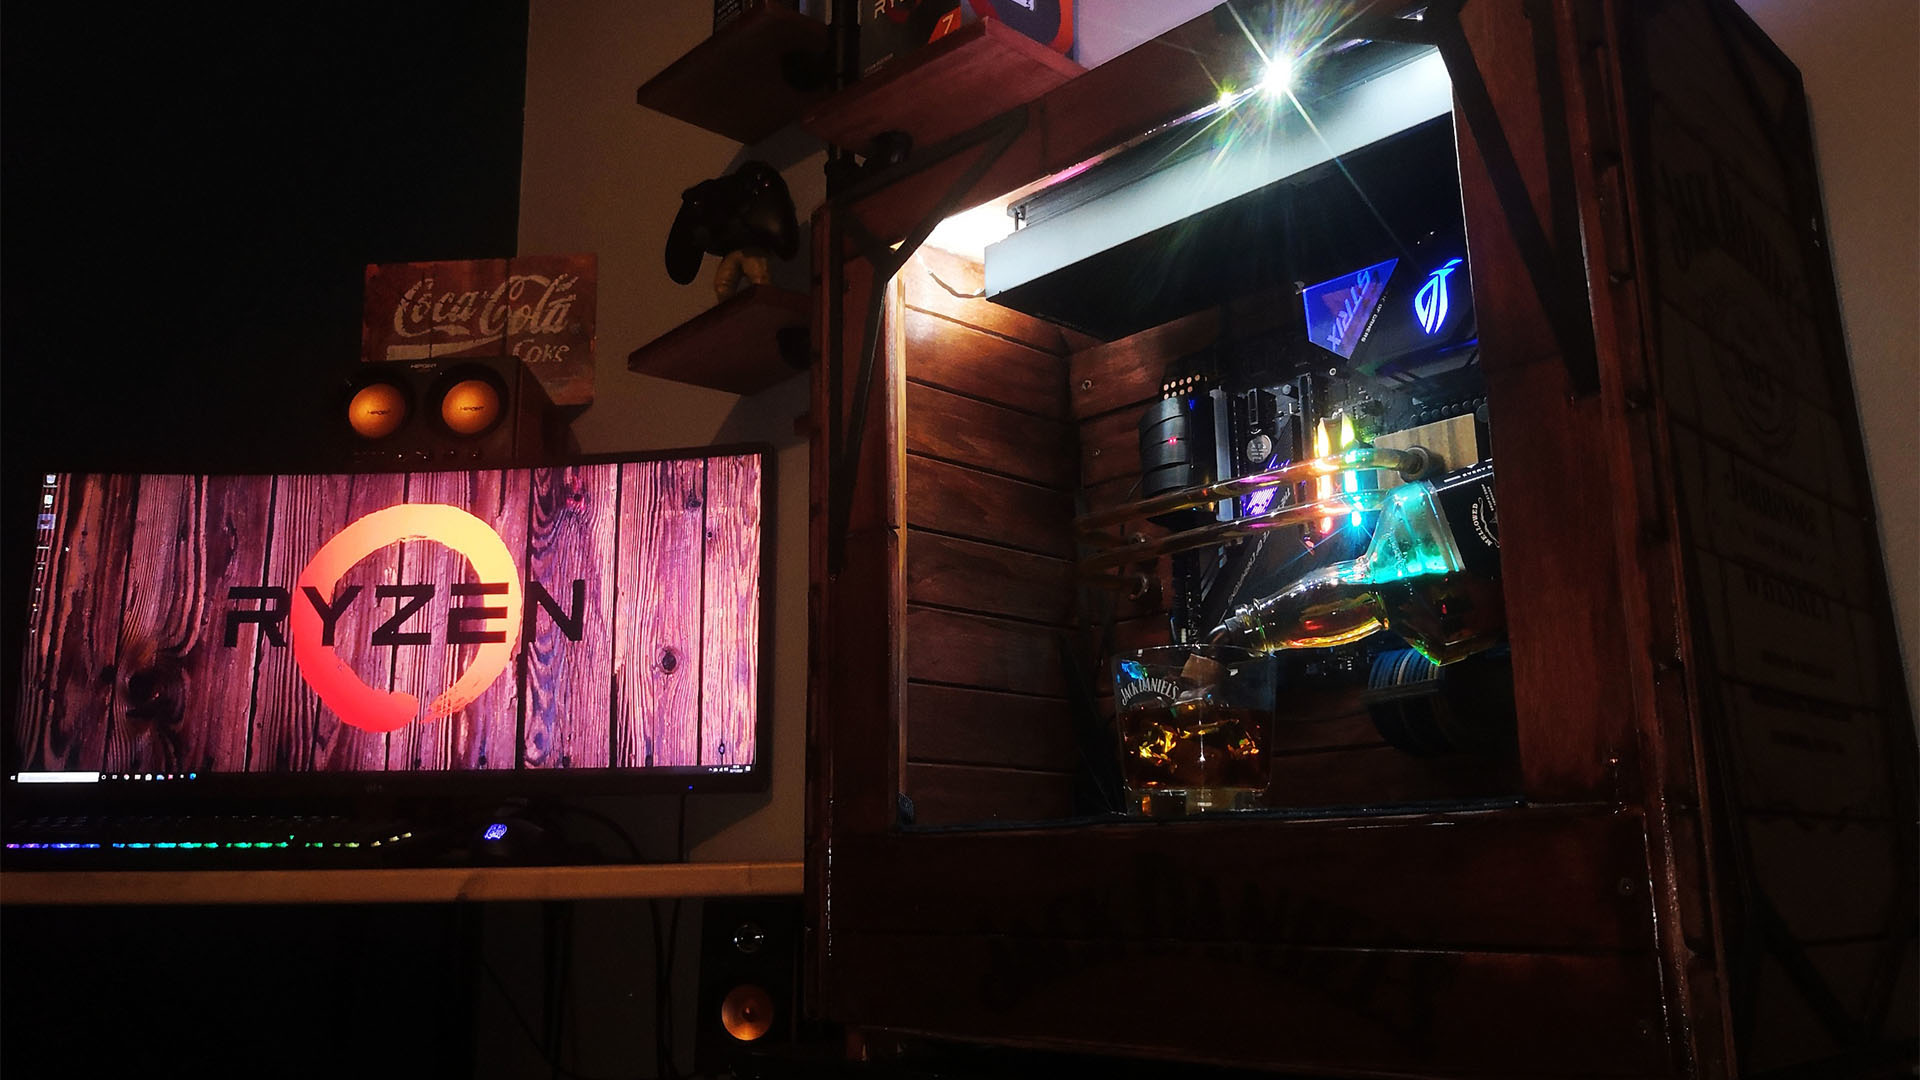 La PC para juegos de Jack Daniel's en un escritorio junto a un monitor de juegos